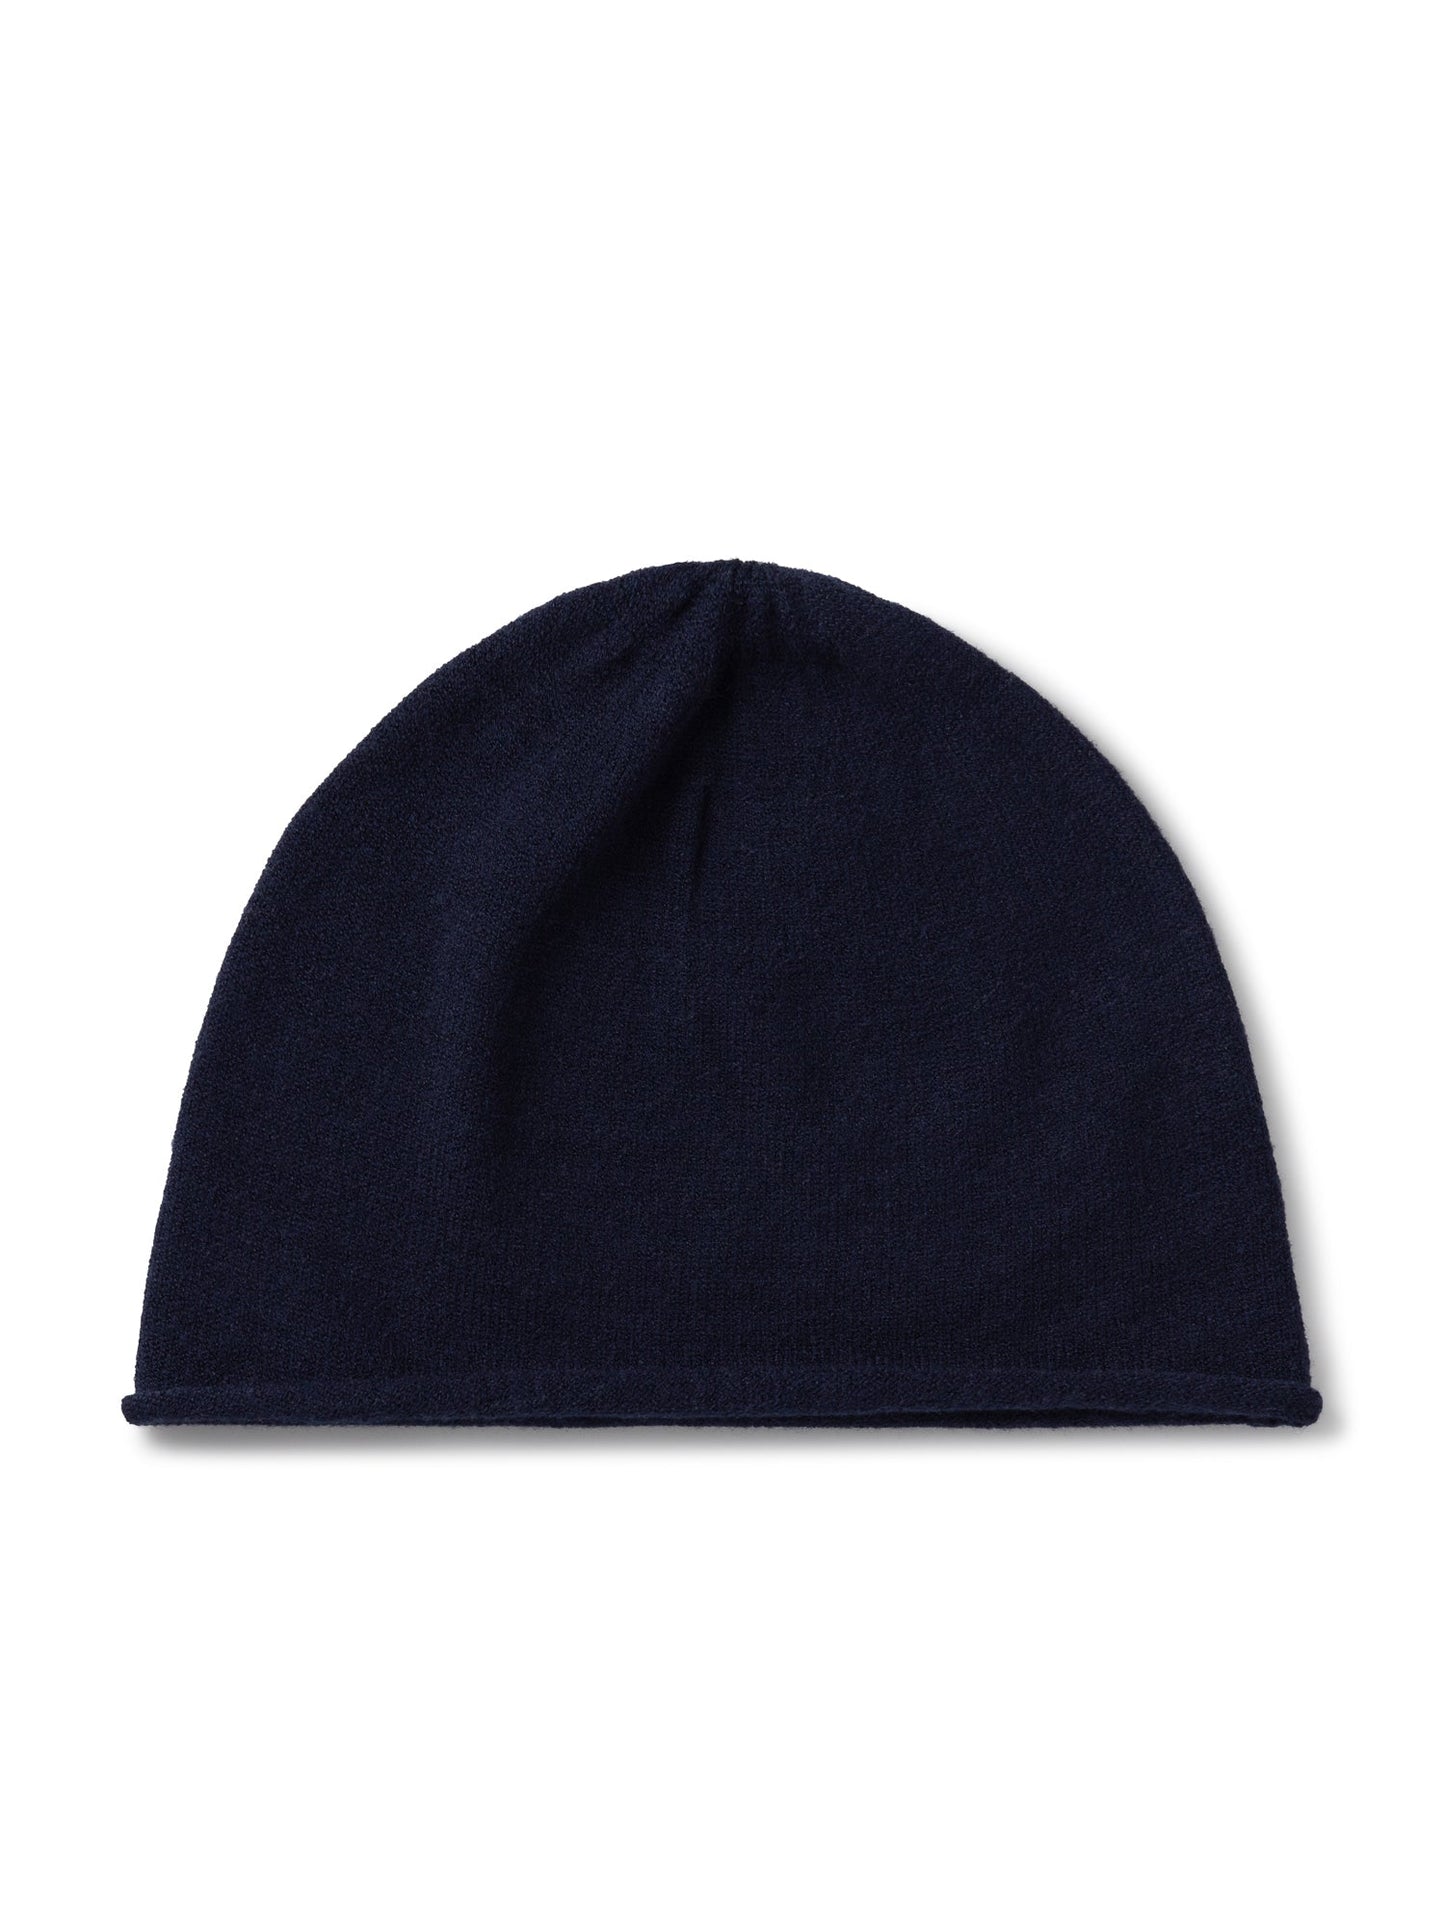 Hat - Navy Blue